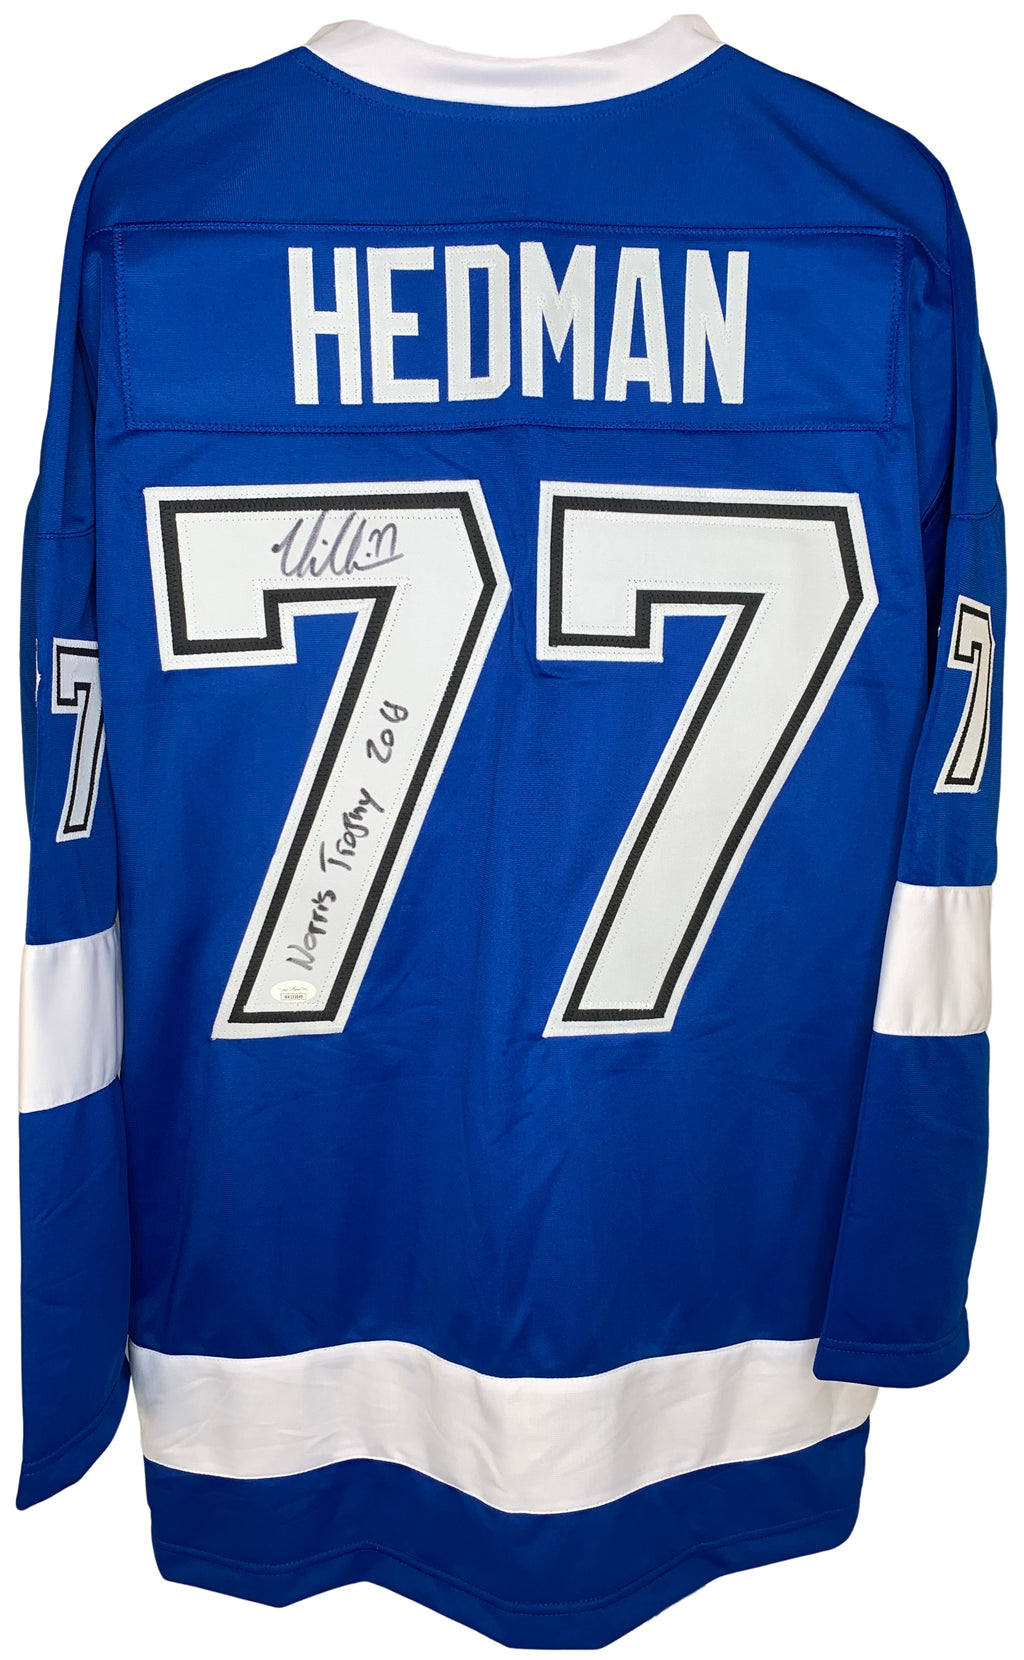 Victor Hedman signed inscribed jersey autographed Tampa Bay Lightning JSA COA